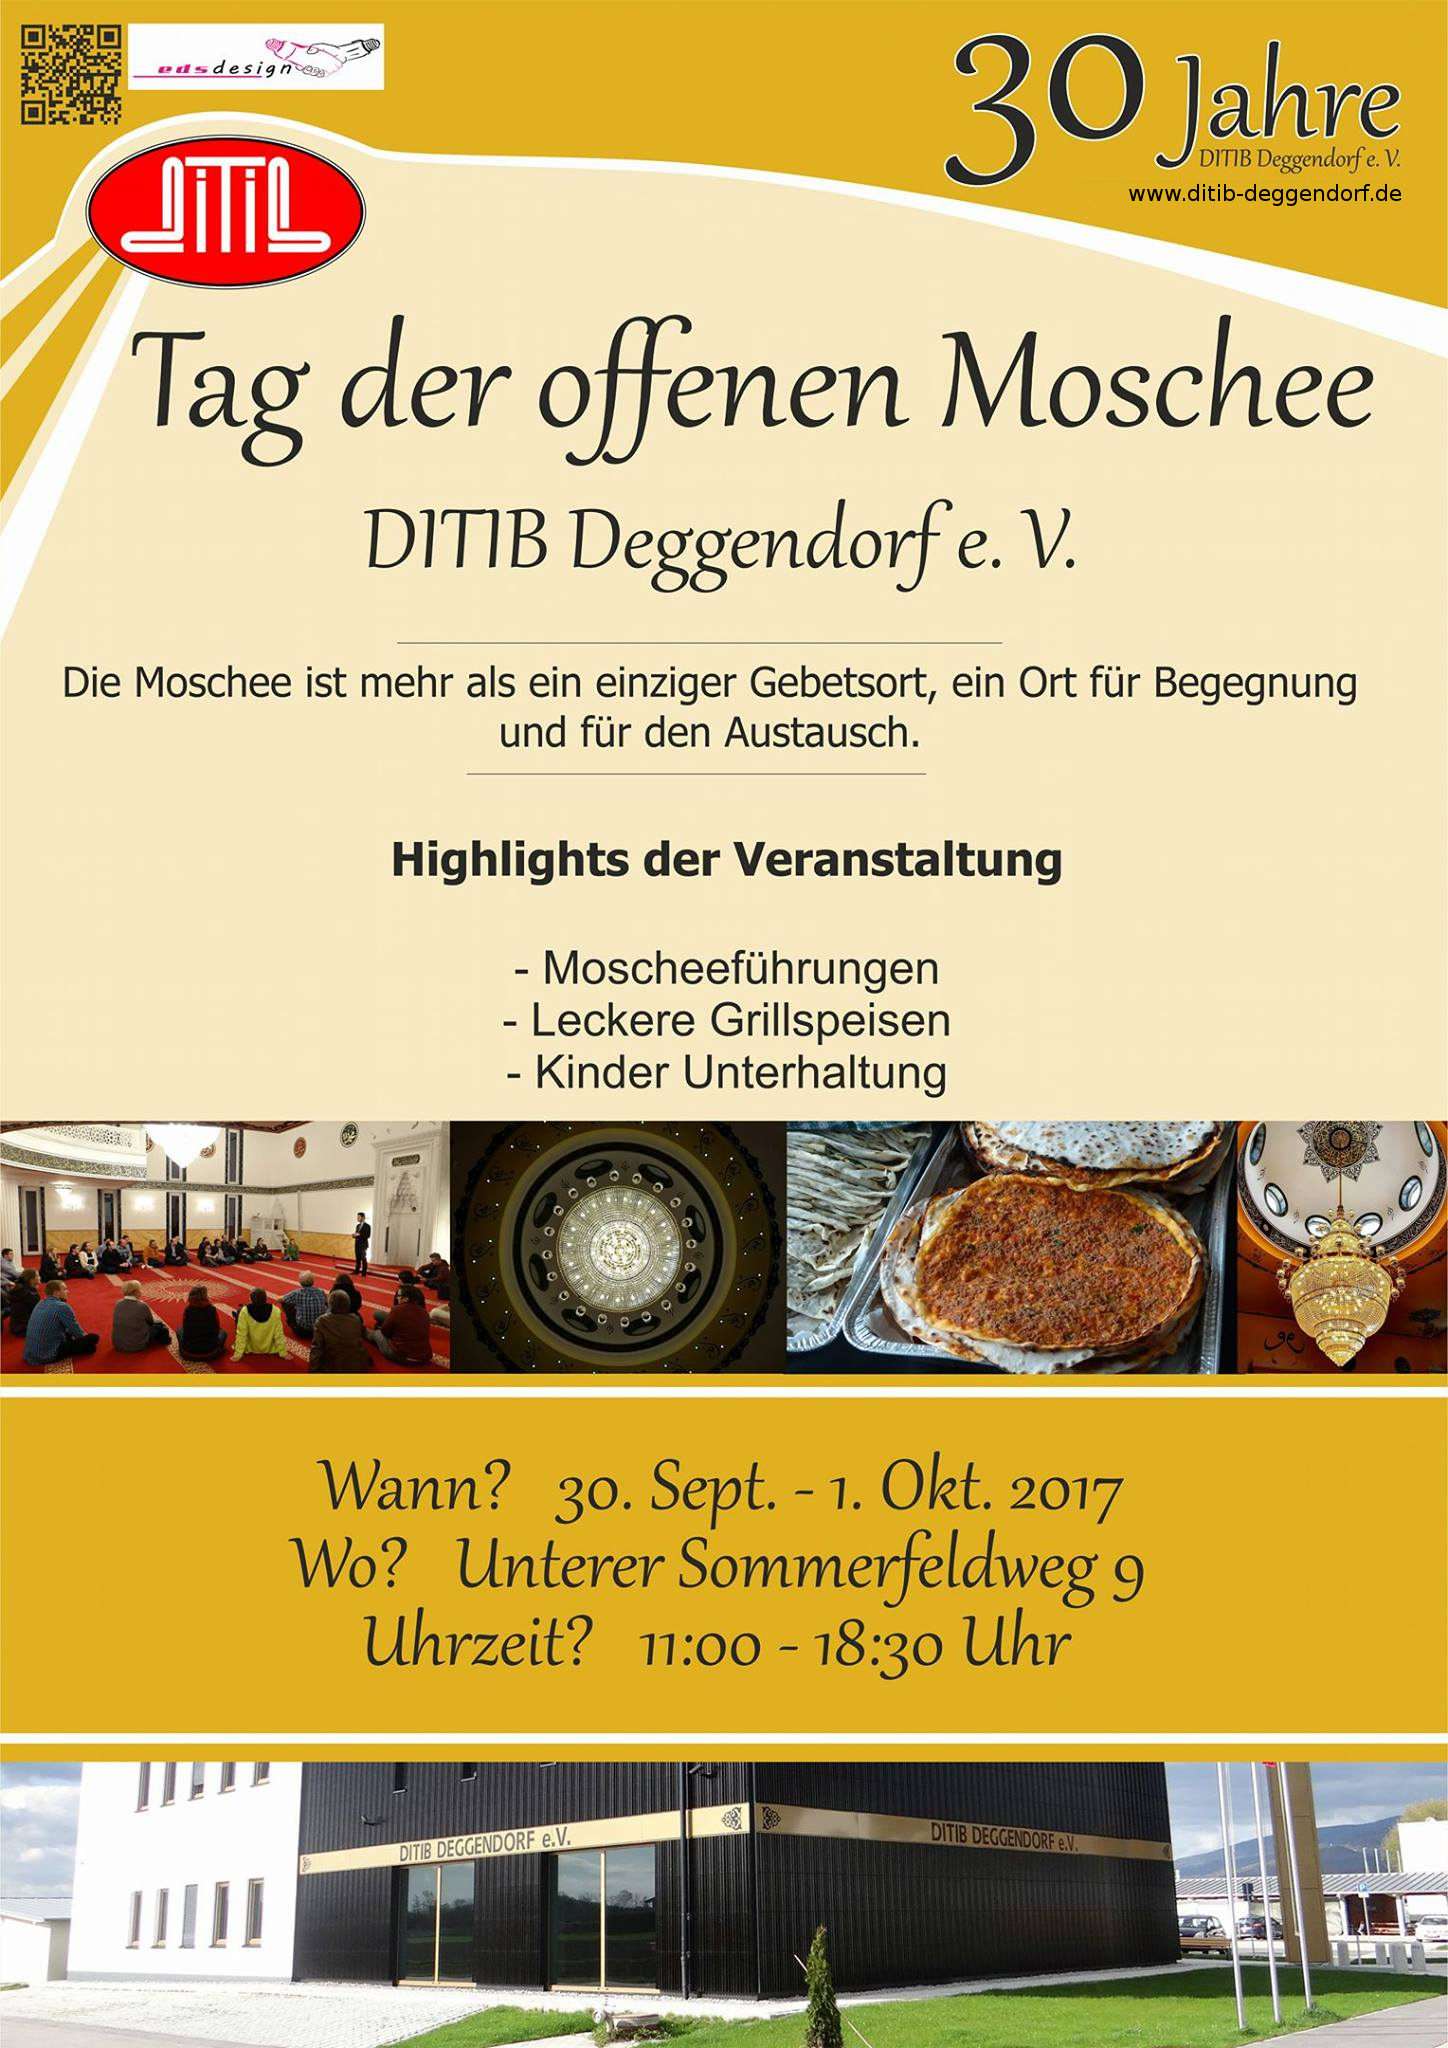 2017 Tag der offenen Moschee Ditib Deggendorf